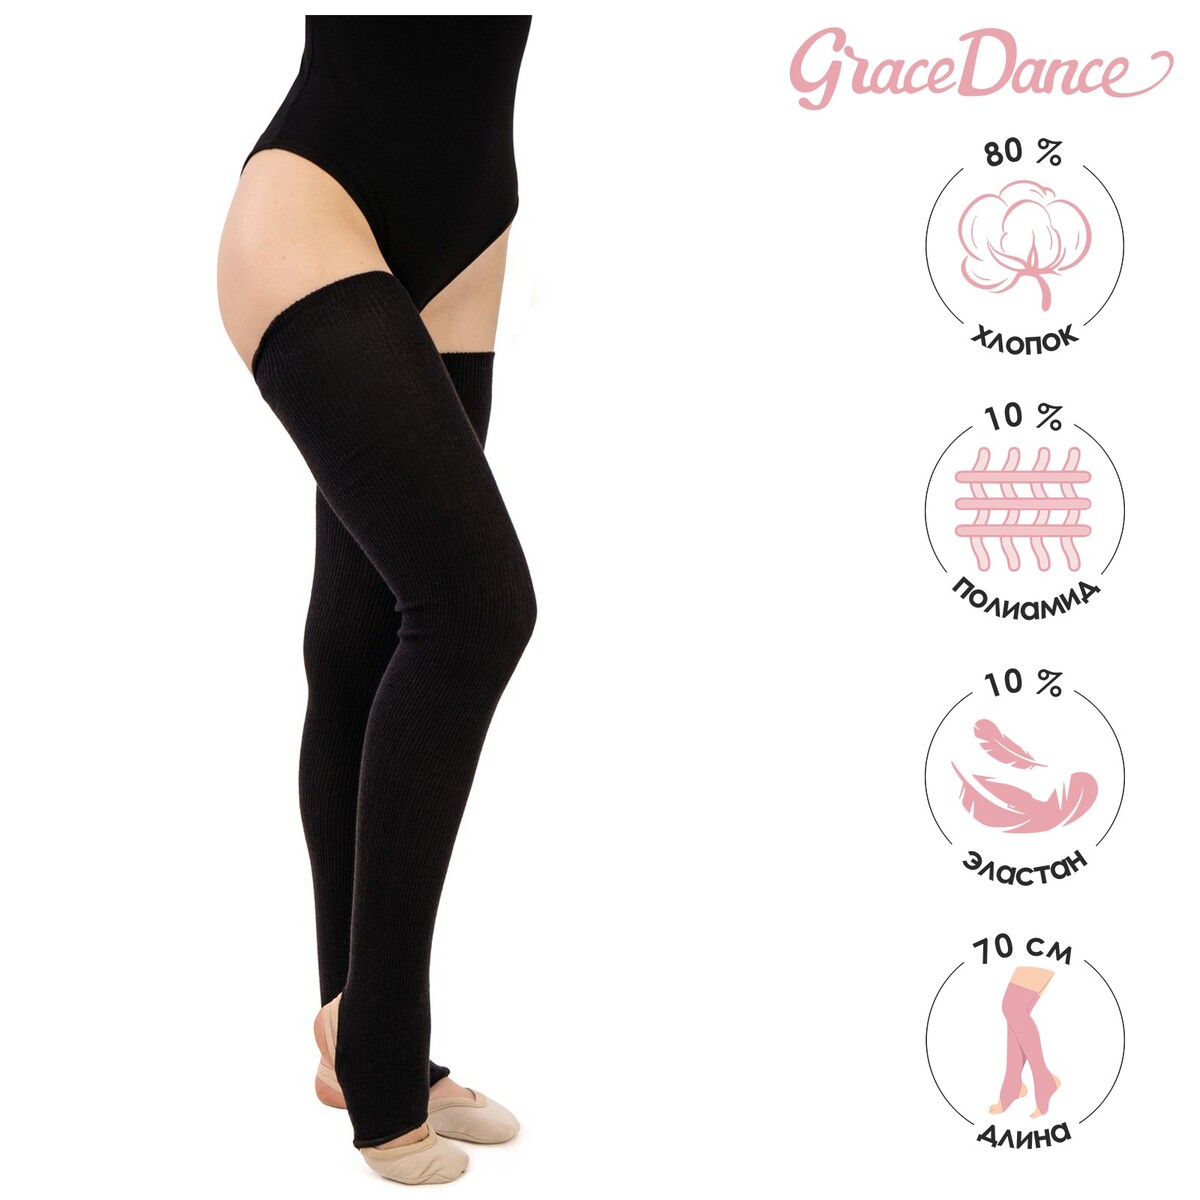 Гетры для танцев grace dance №3, на резинке, длина 70 см, цвет черный Grace Dance